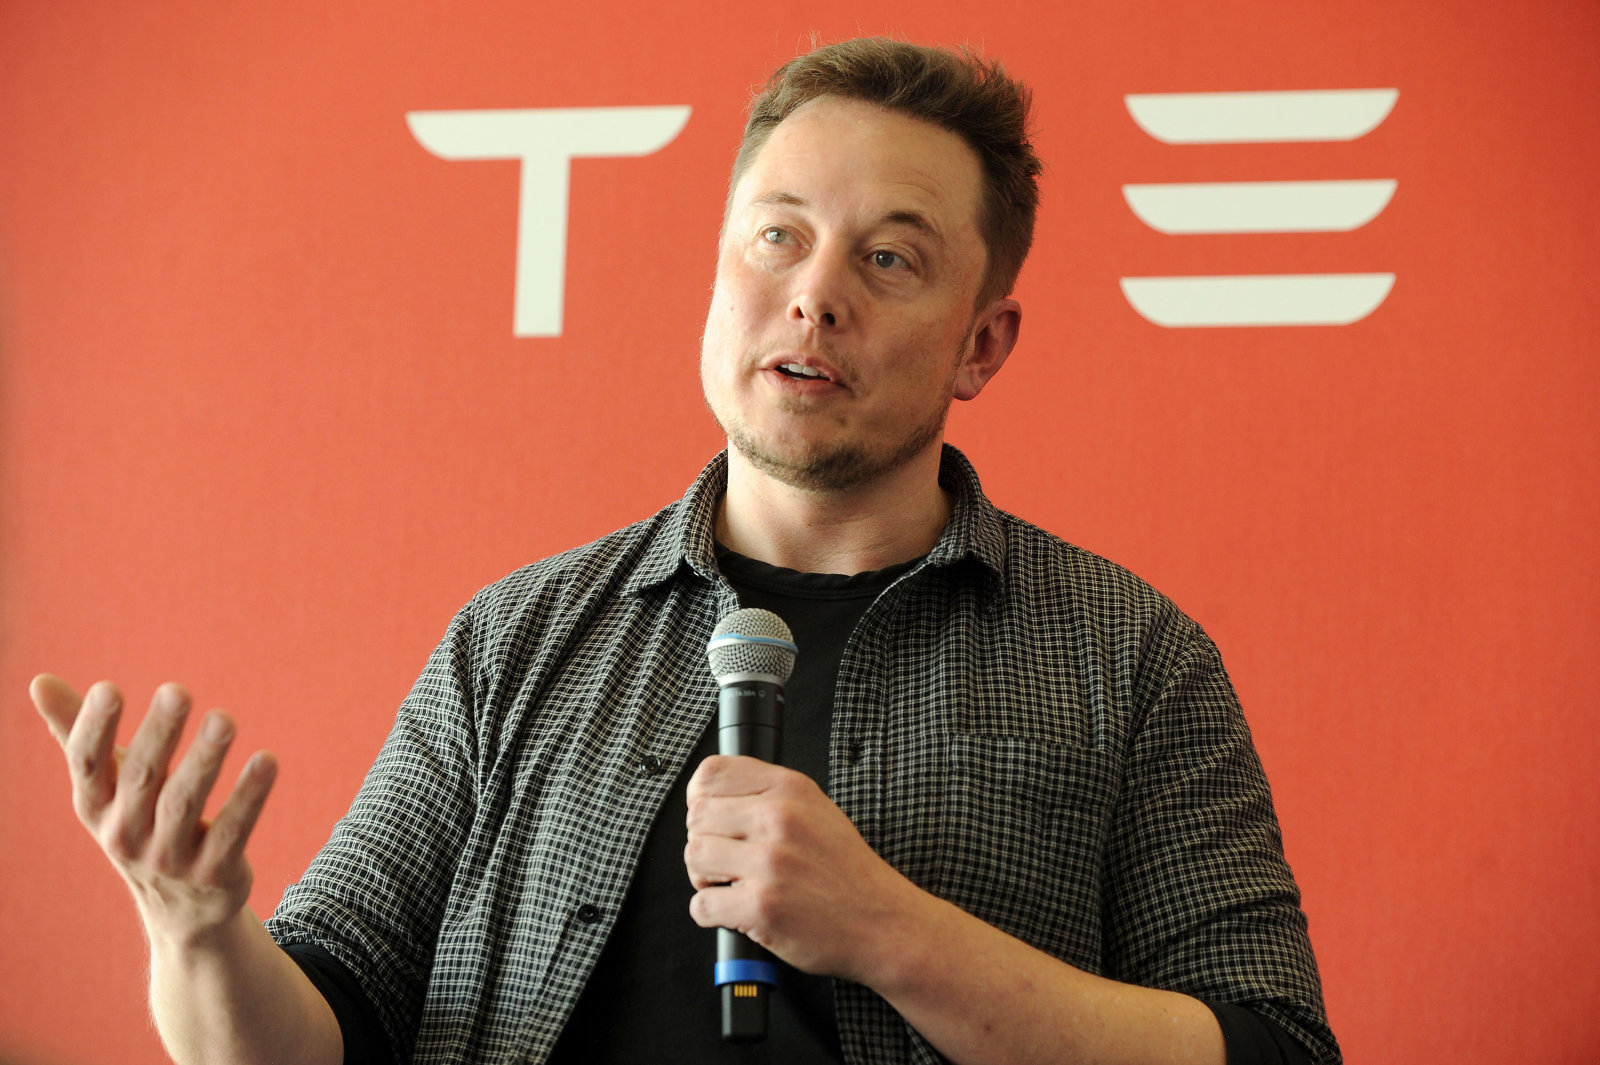 SEC är att undersöka tweets Elon musk om Tesla utgång från börsen. Affärsman väntar för domstolen?